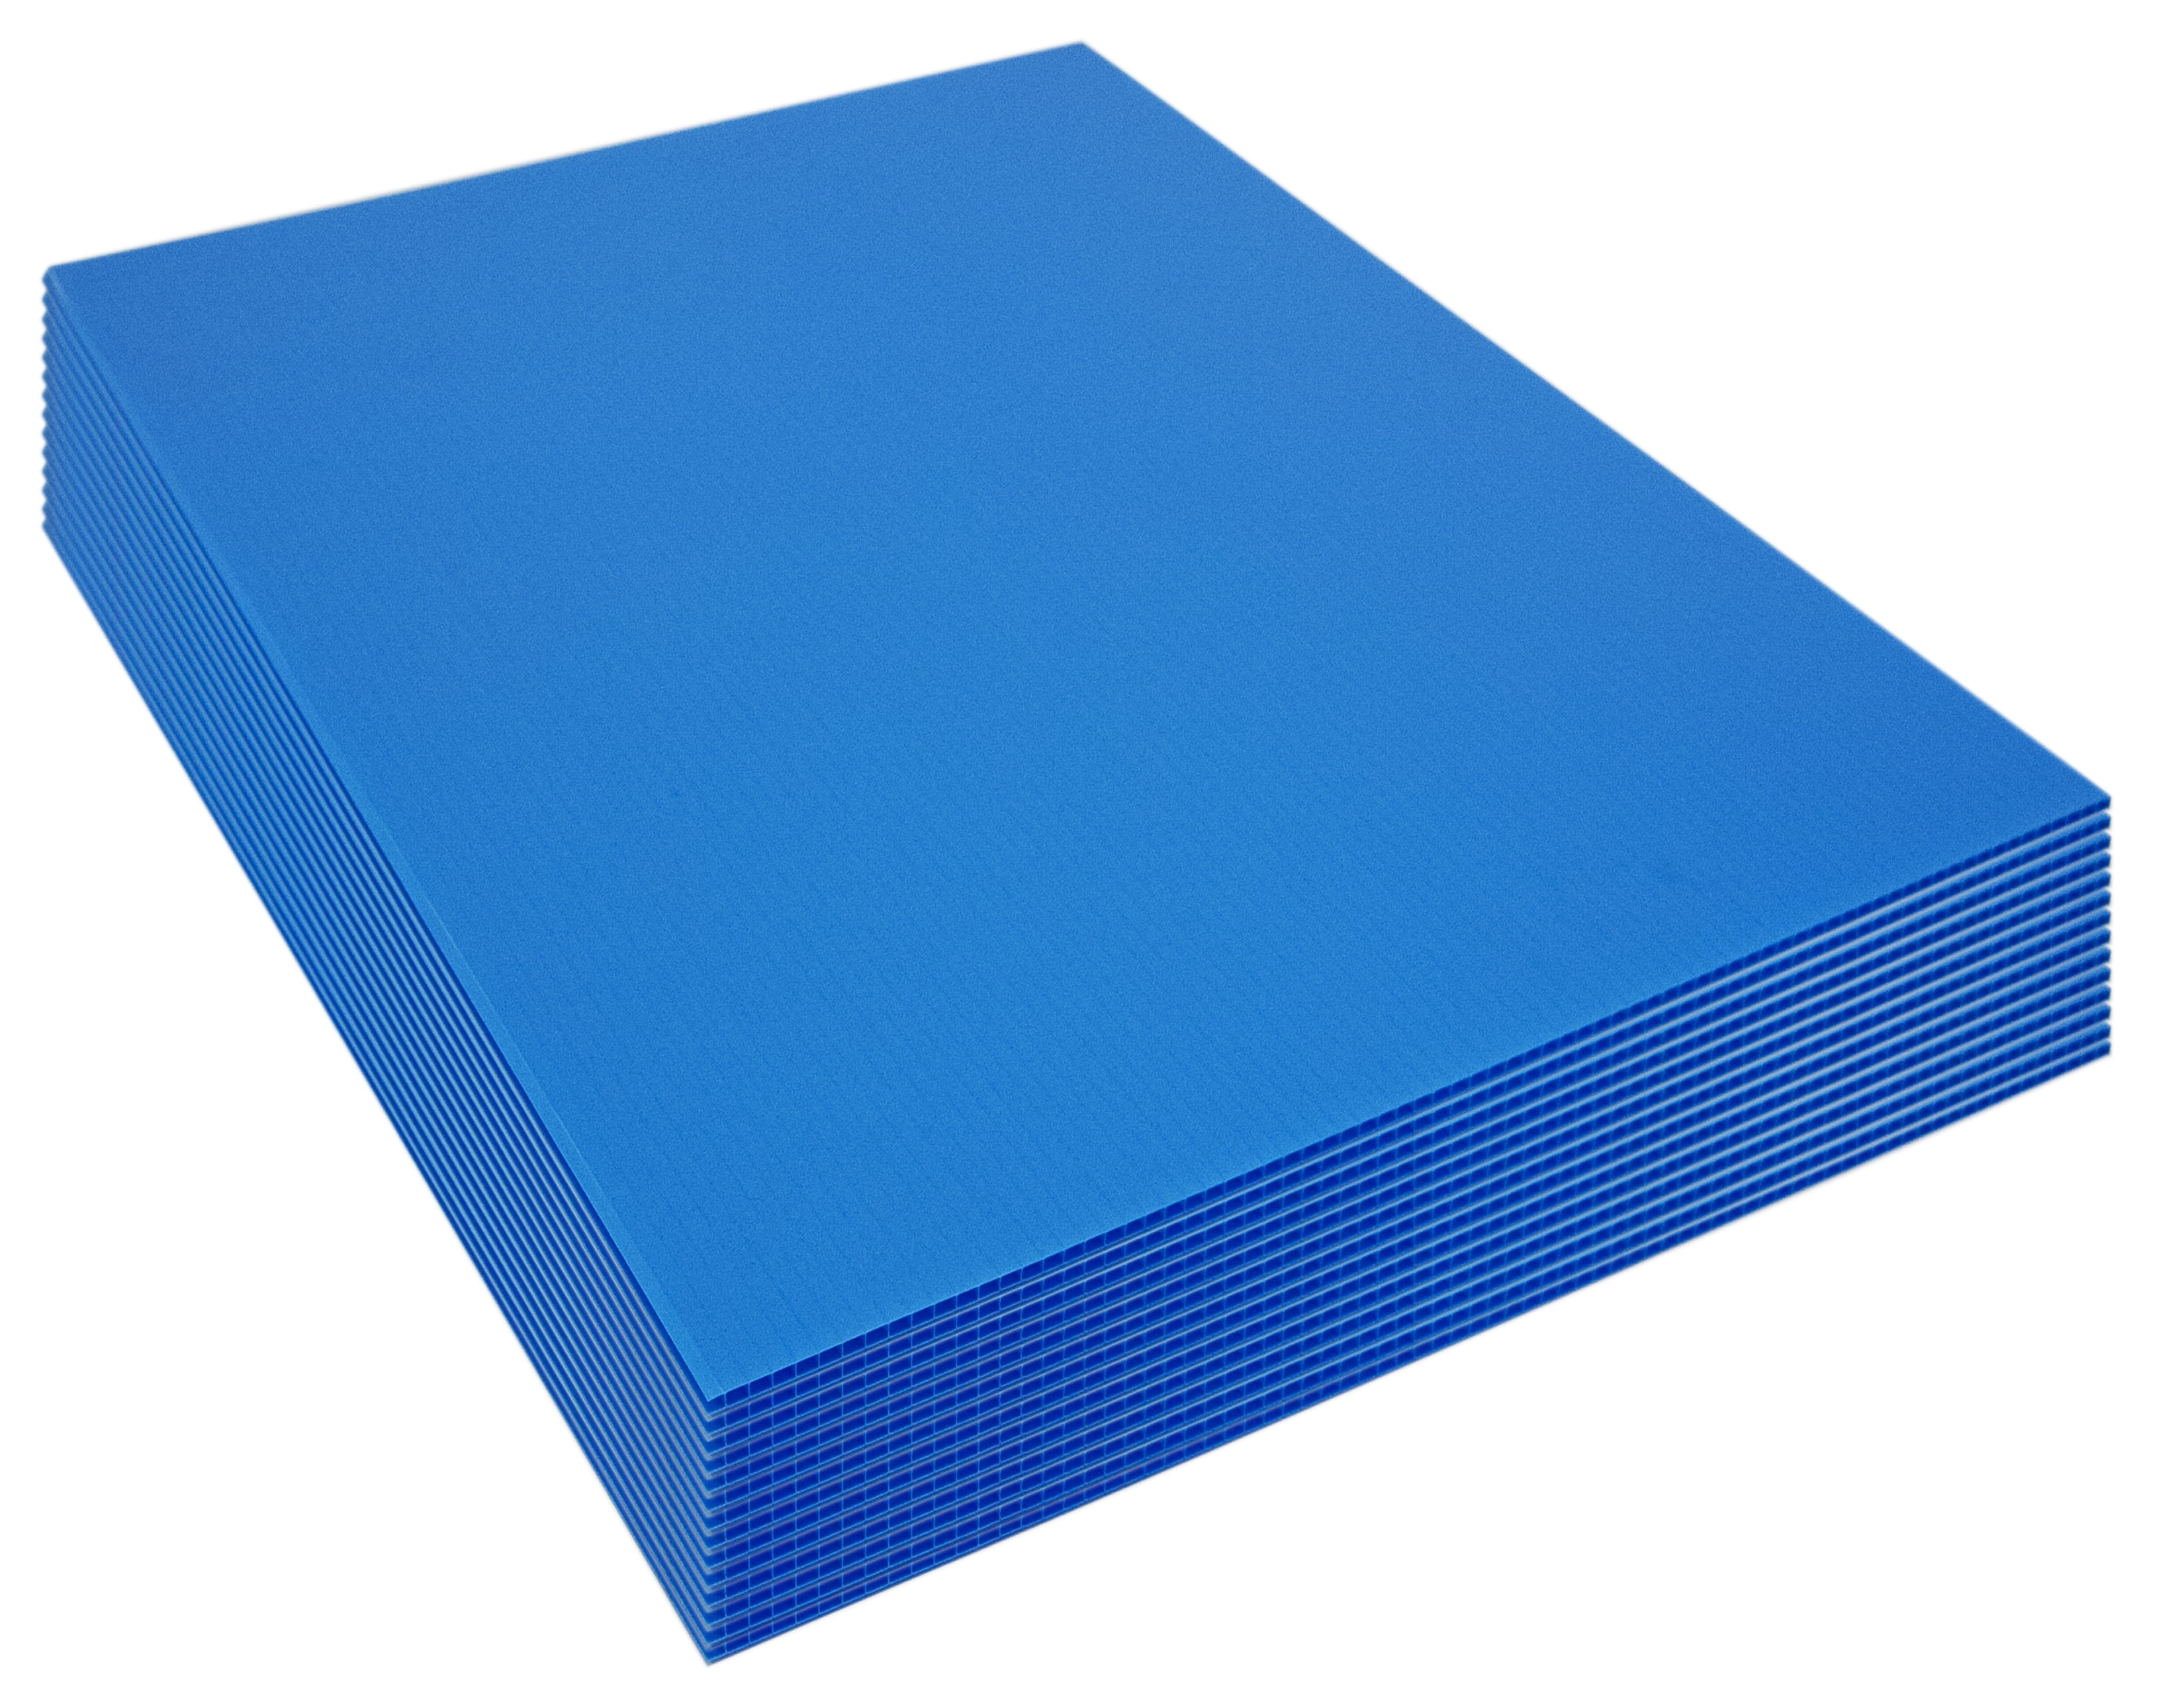 Foamboard Sheet 36 X 36 Distributed by Regal Plastics